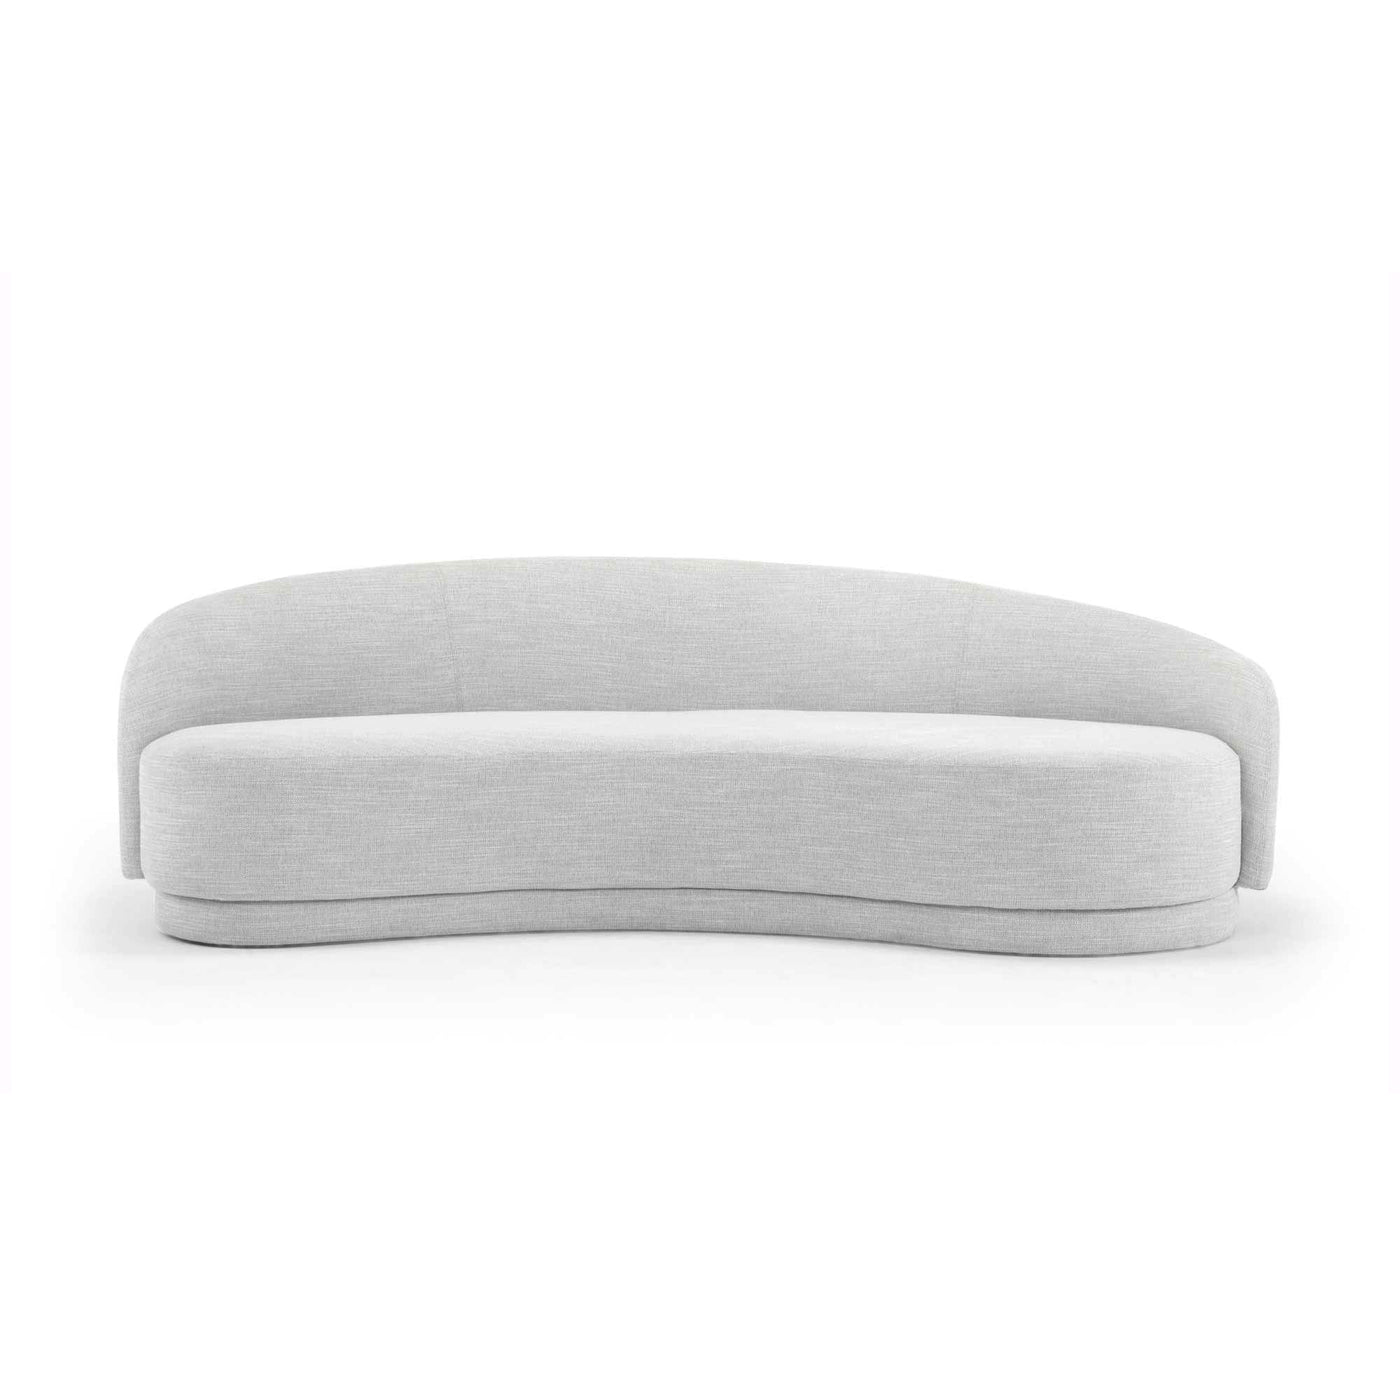 3 Seater Fabric Sofa - Light Texture Grey